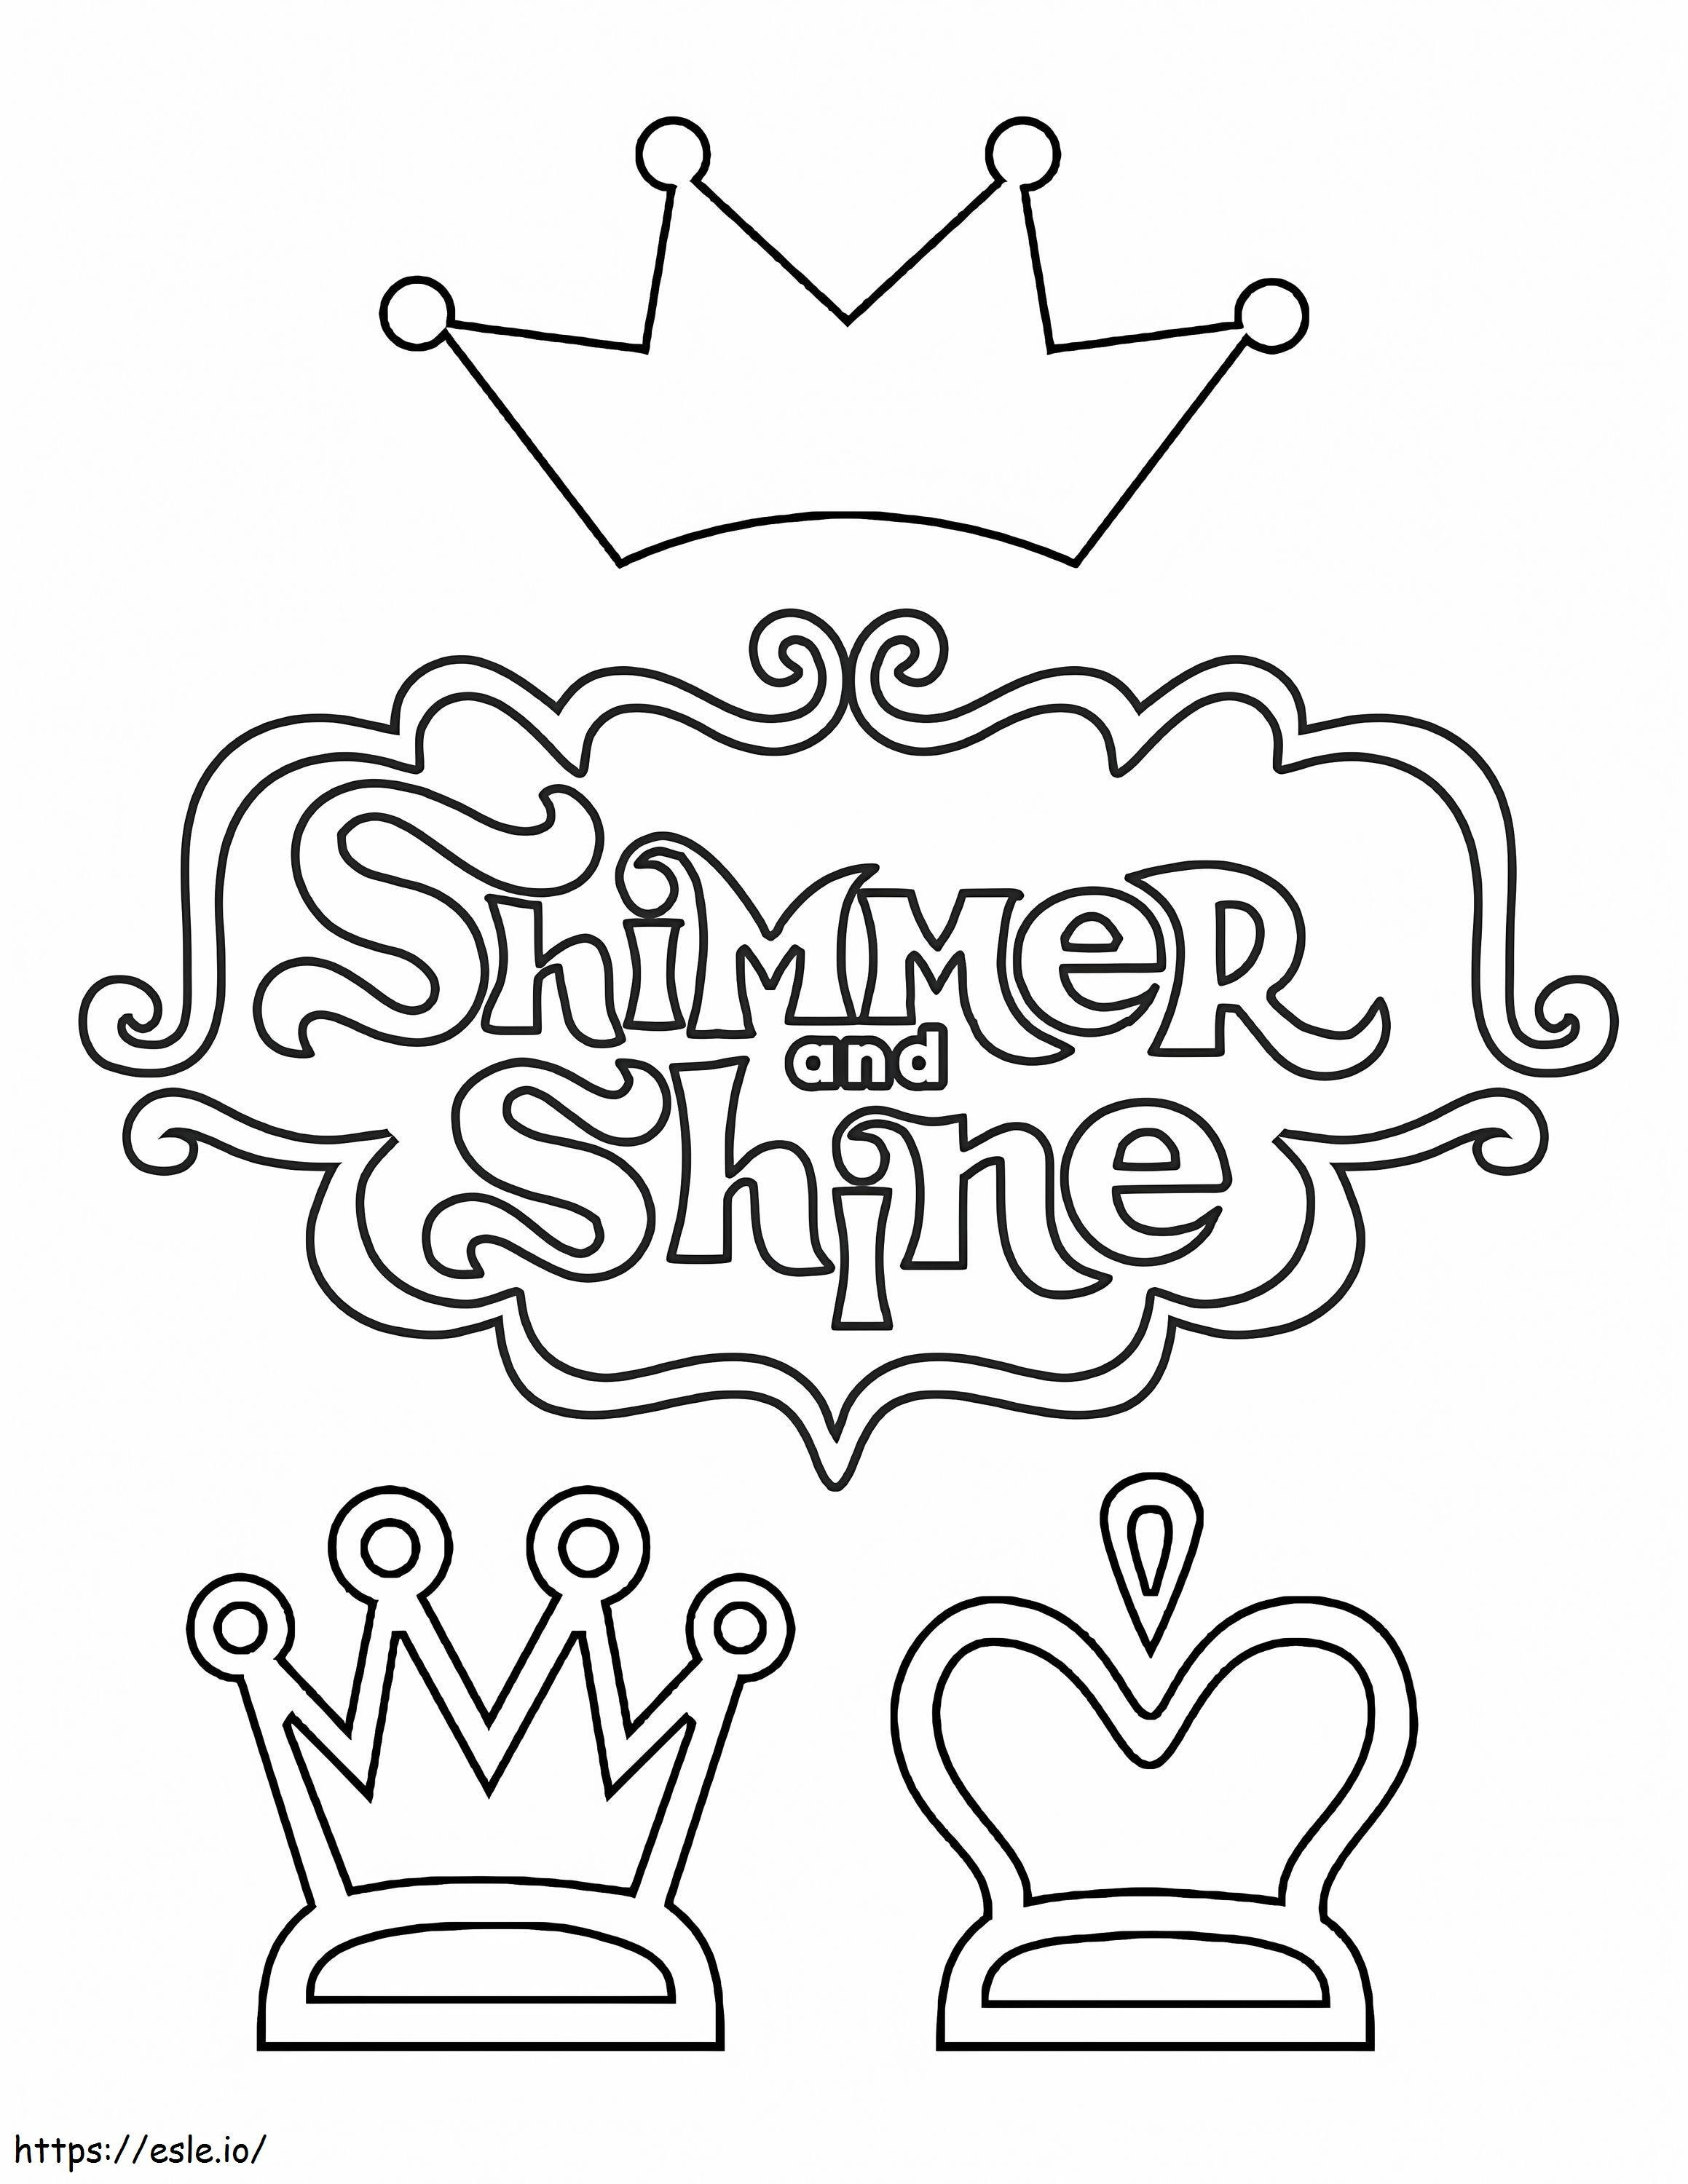 1571627308 Shimmer & Shine-logo kleurplaat kleurplaat